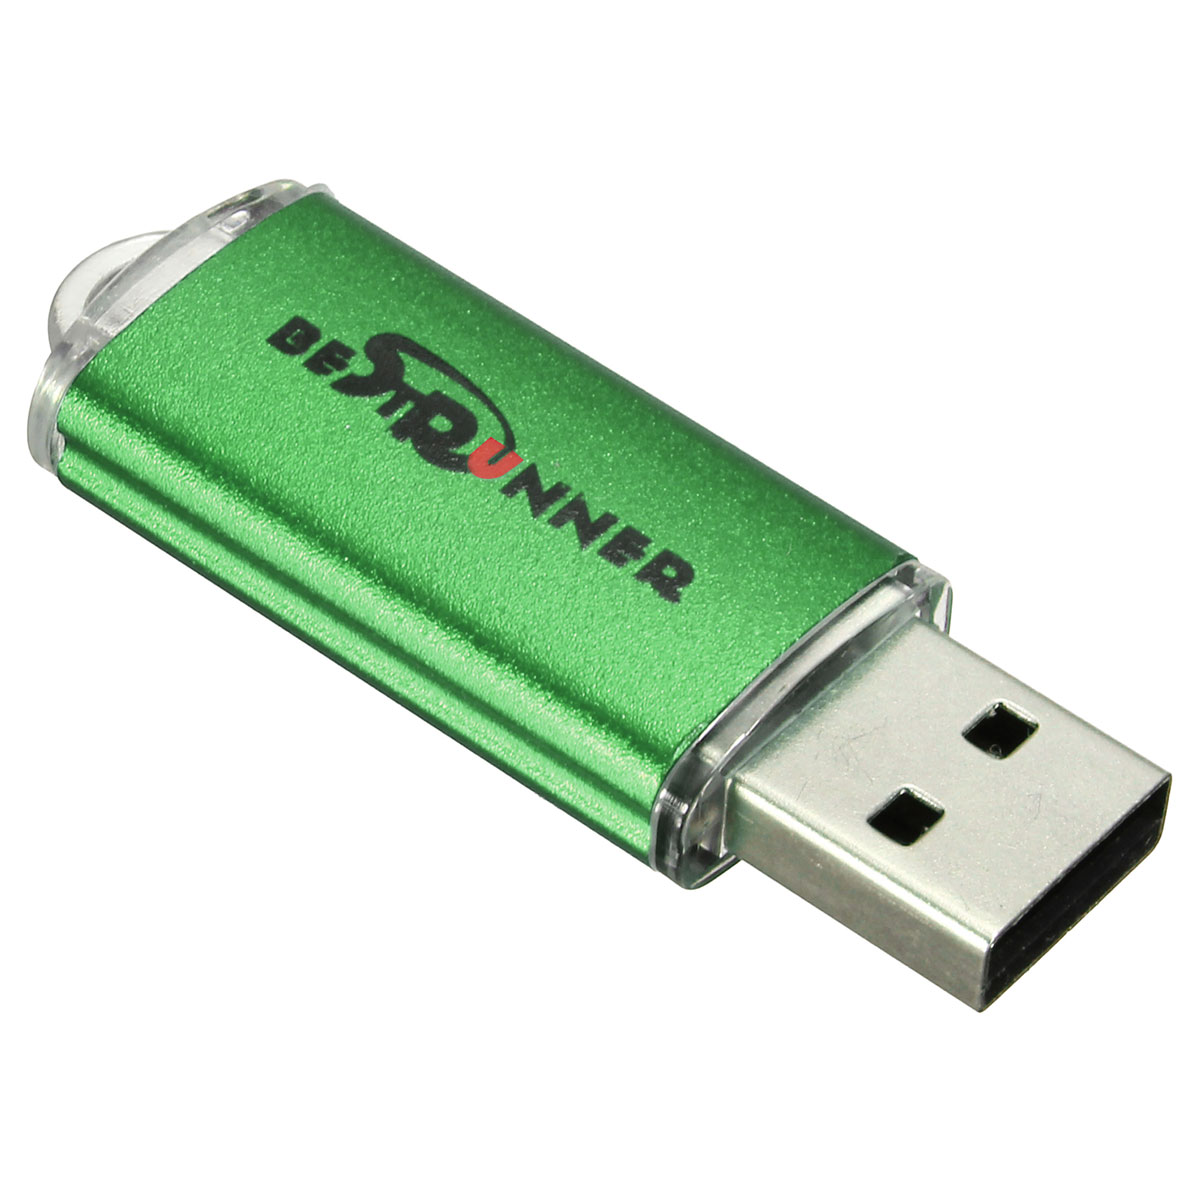 Bestrunner 32GB USB 2.0 Flash Drive Candy Color Memory U Disk 23